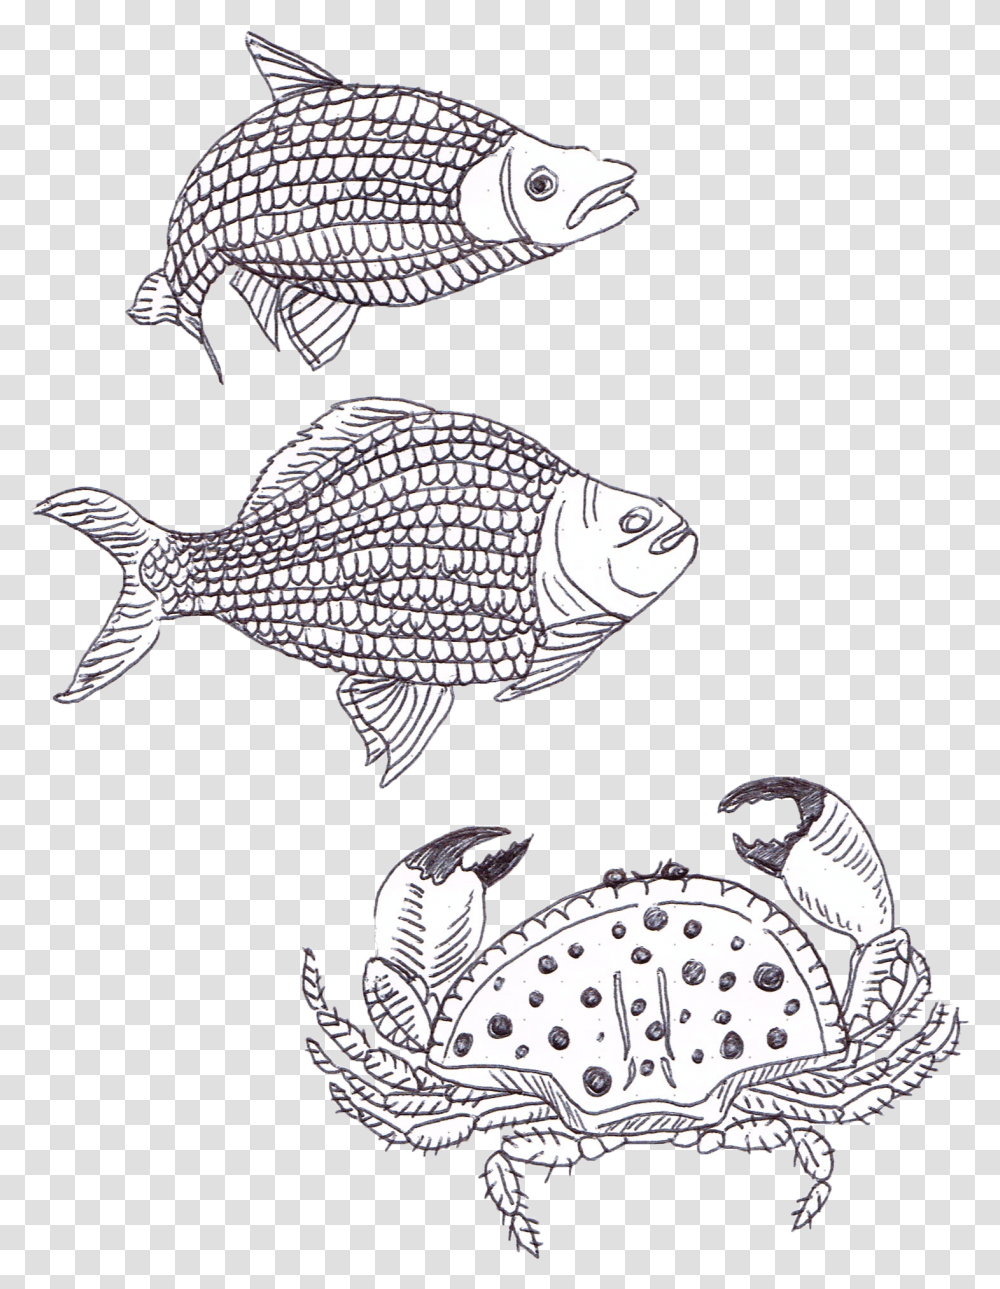 Coral Reef Fish, Animal, Sea Life, Aquatic, Water Transparent Png